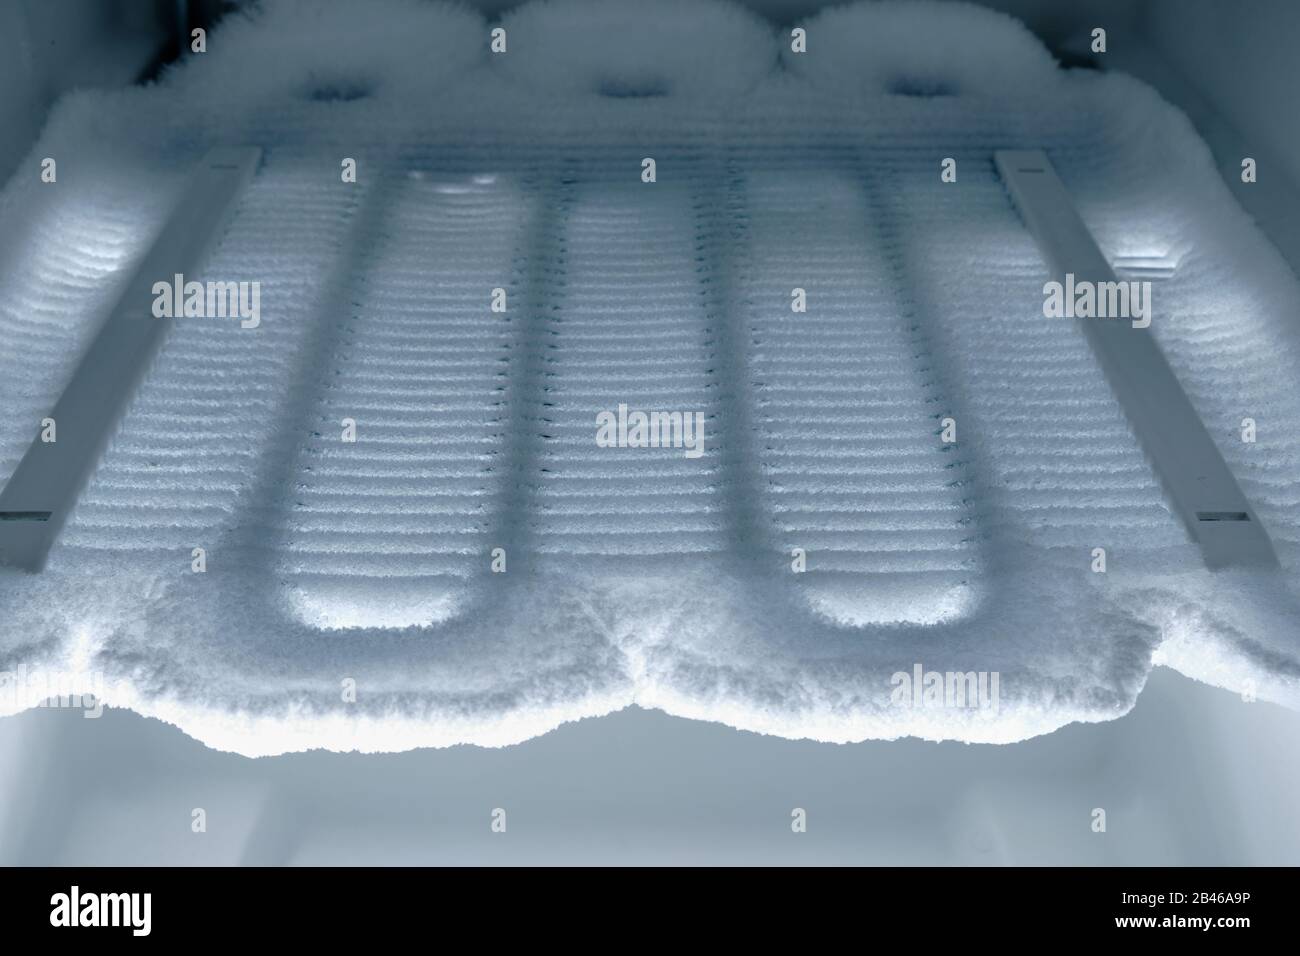 Temps de dégivrage : vue dans le congélateur sur les serpentins de refroidissement complètement couverts de glace. Banque D'Images